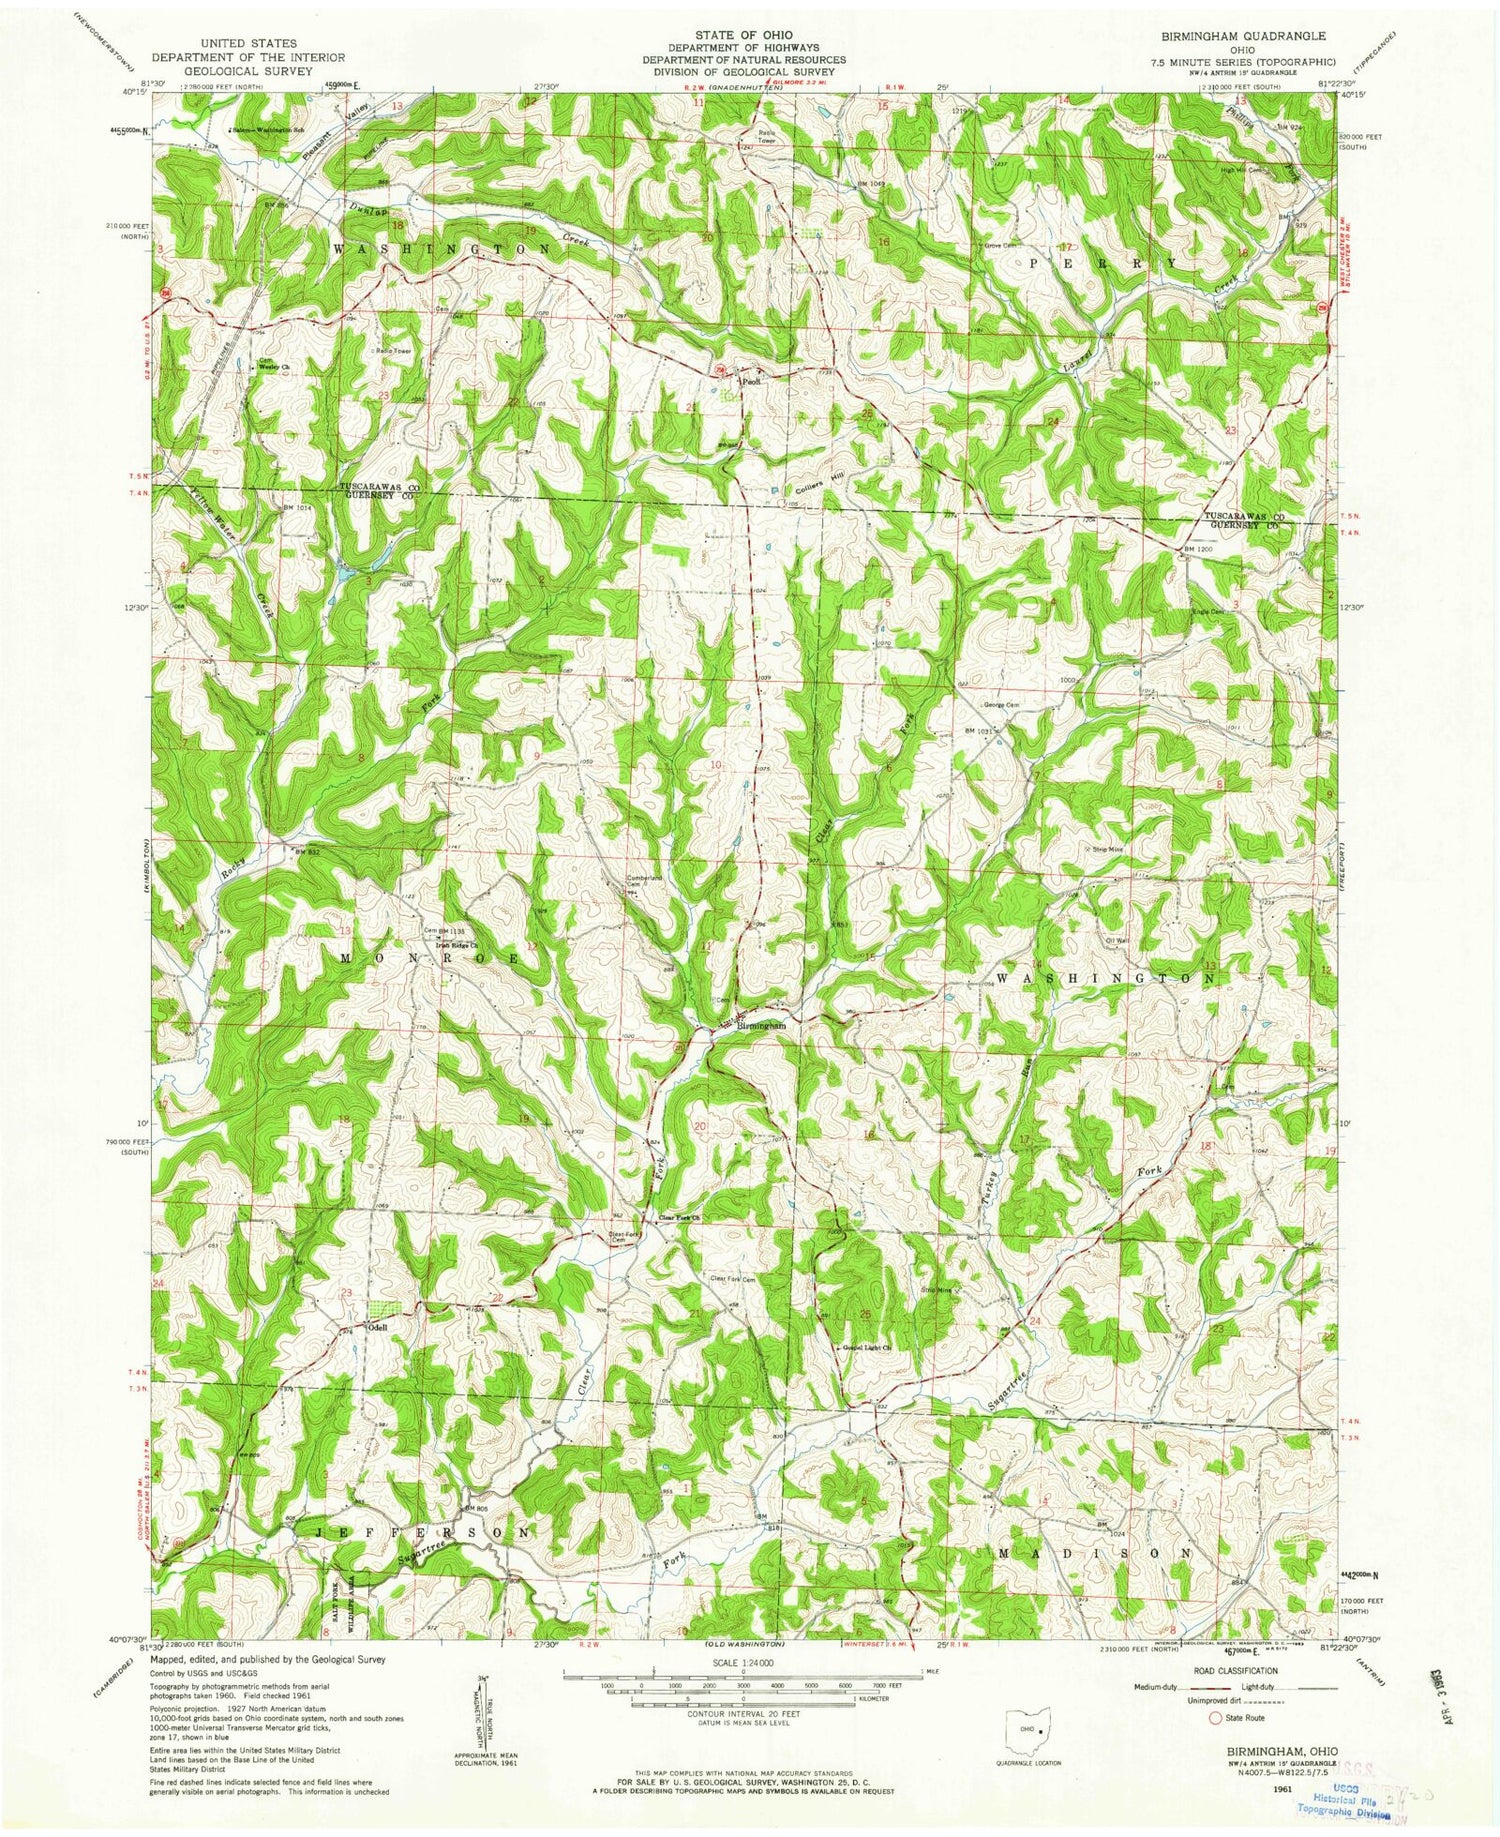 Classic USGS Birmingham Ohio 7.5'x7.5' Topo Map Image